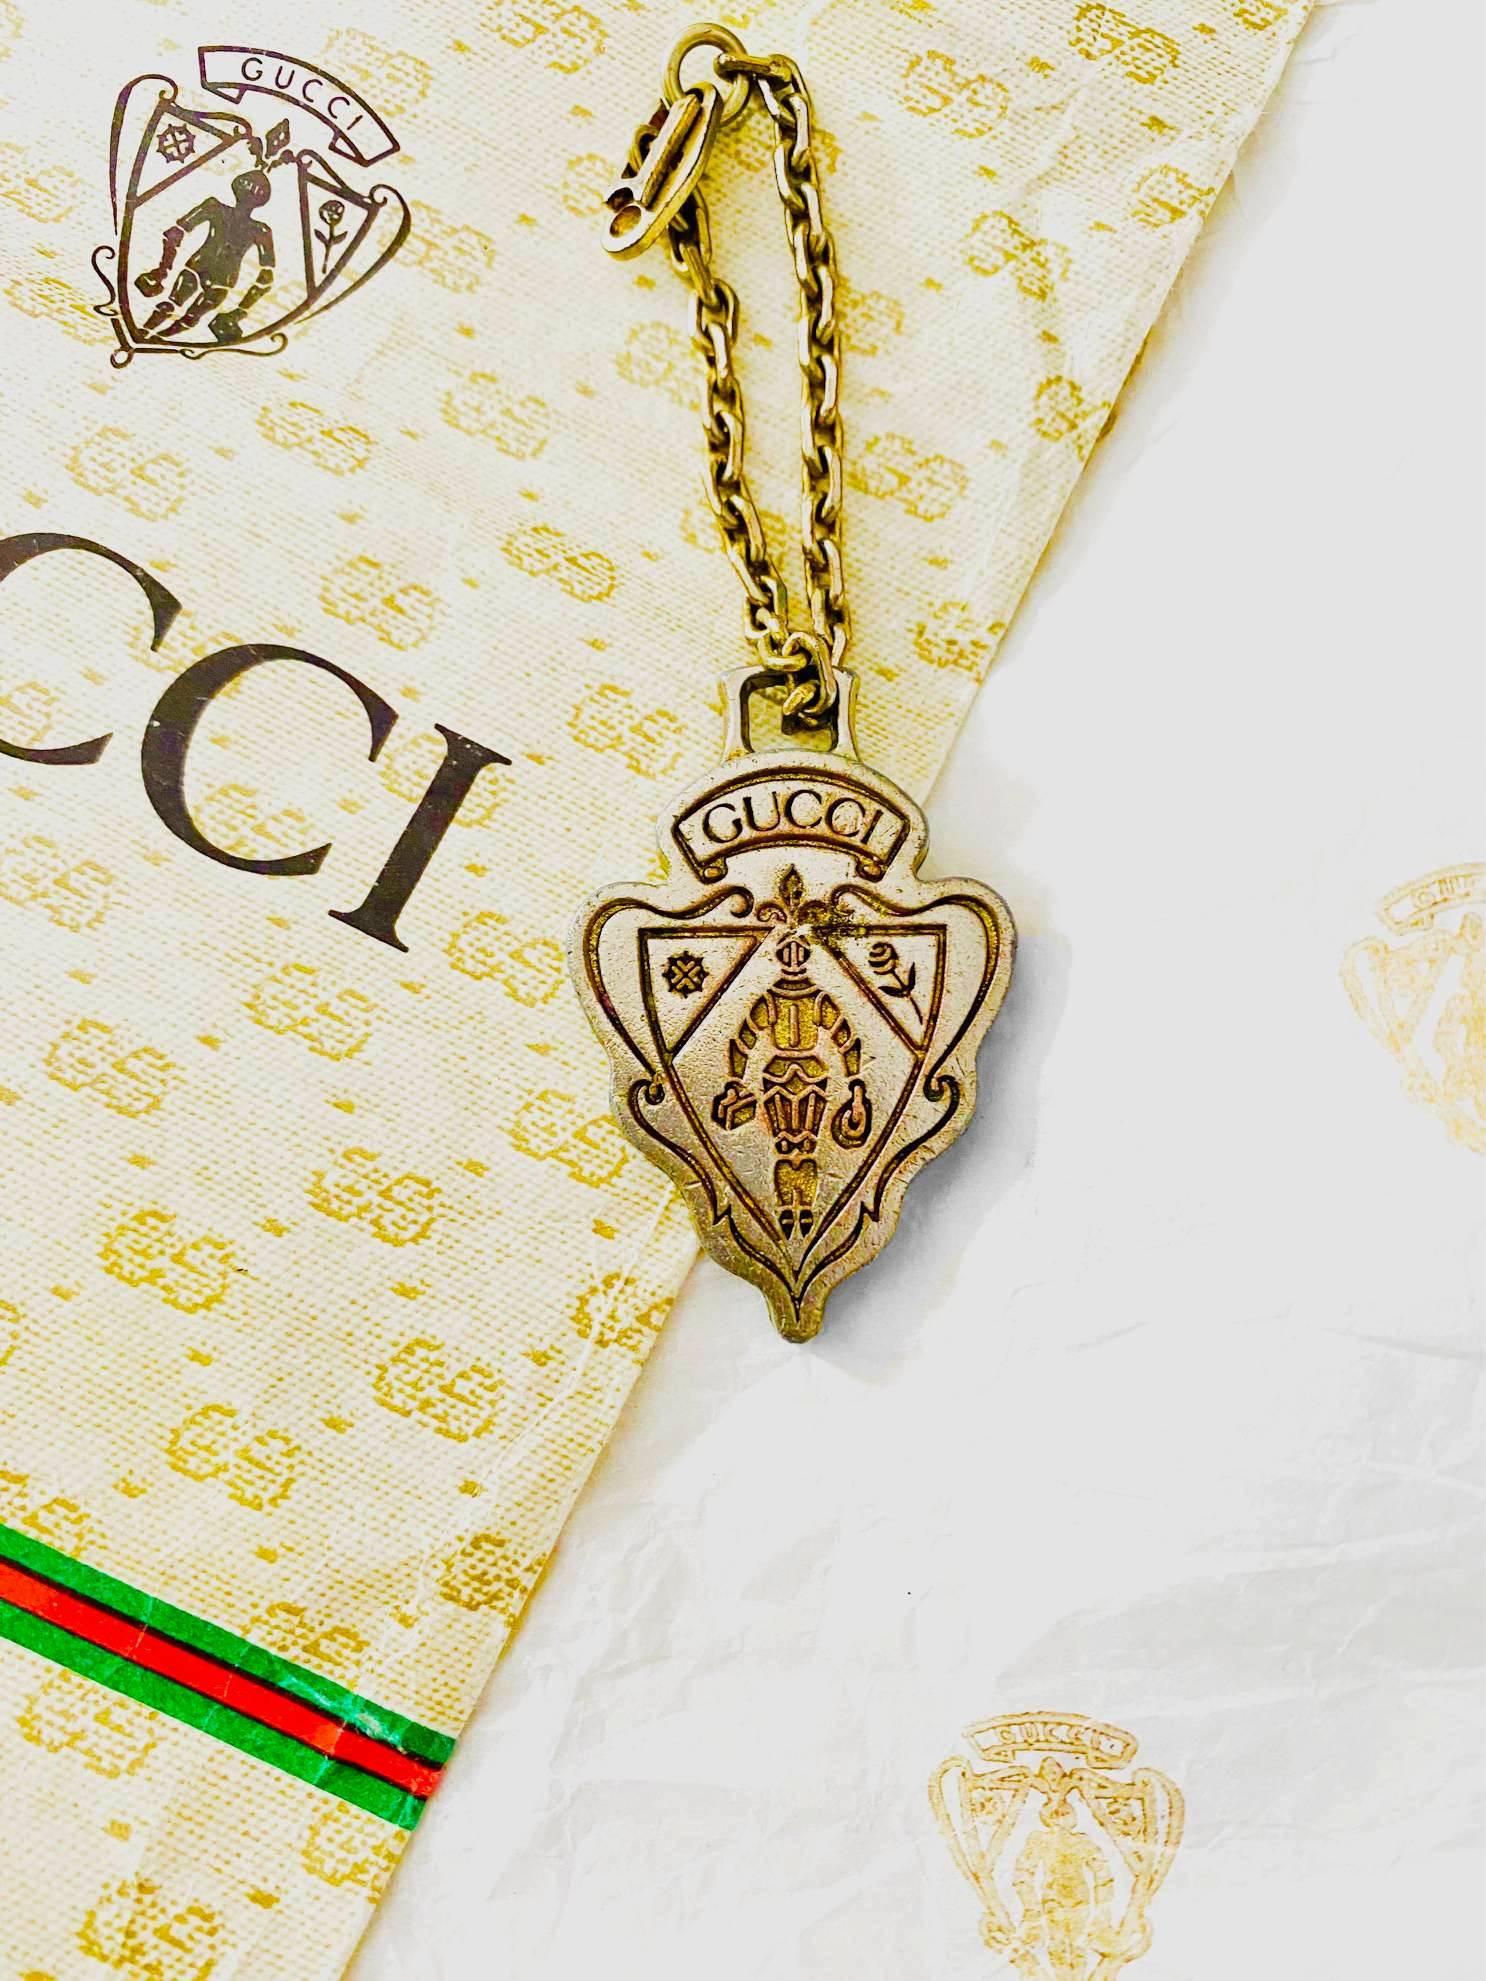 Der Gucci-Schlüsselanhänger mit Metallemblem aus den 1960er Jahren verleiht jedem Look eine zeitlose Eleganz. Sie ist aus hochwertigem, goldfarbenem Messing gefertigt und verfügt über eine klassische Kette mit Schnalle, die für lange Haltbarkeit